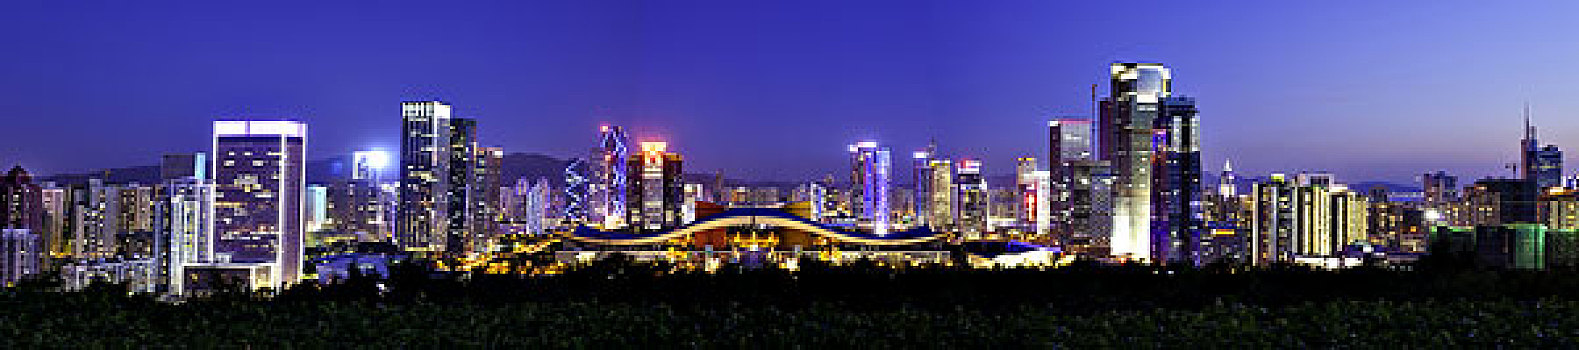 深圳市中心区之夜全景图